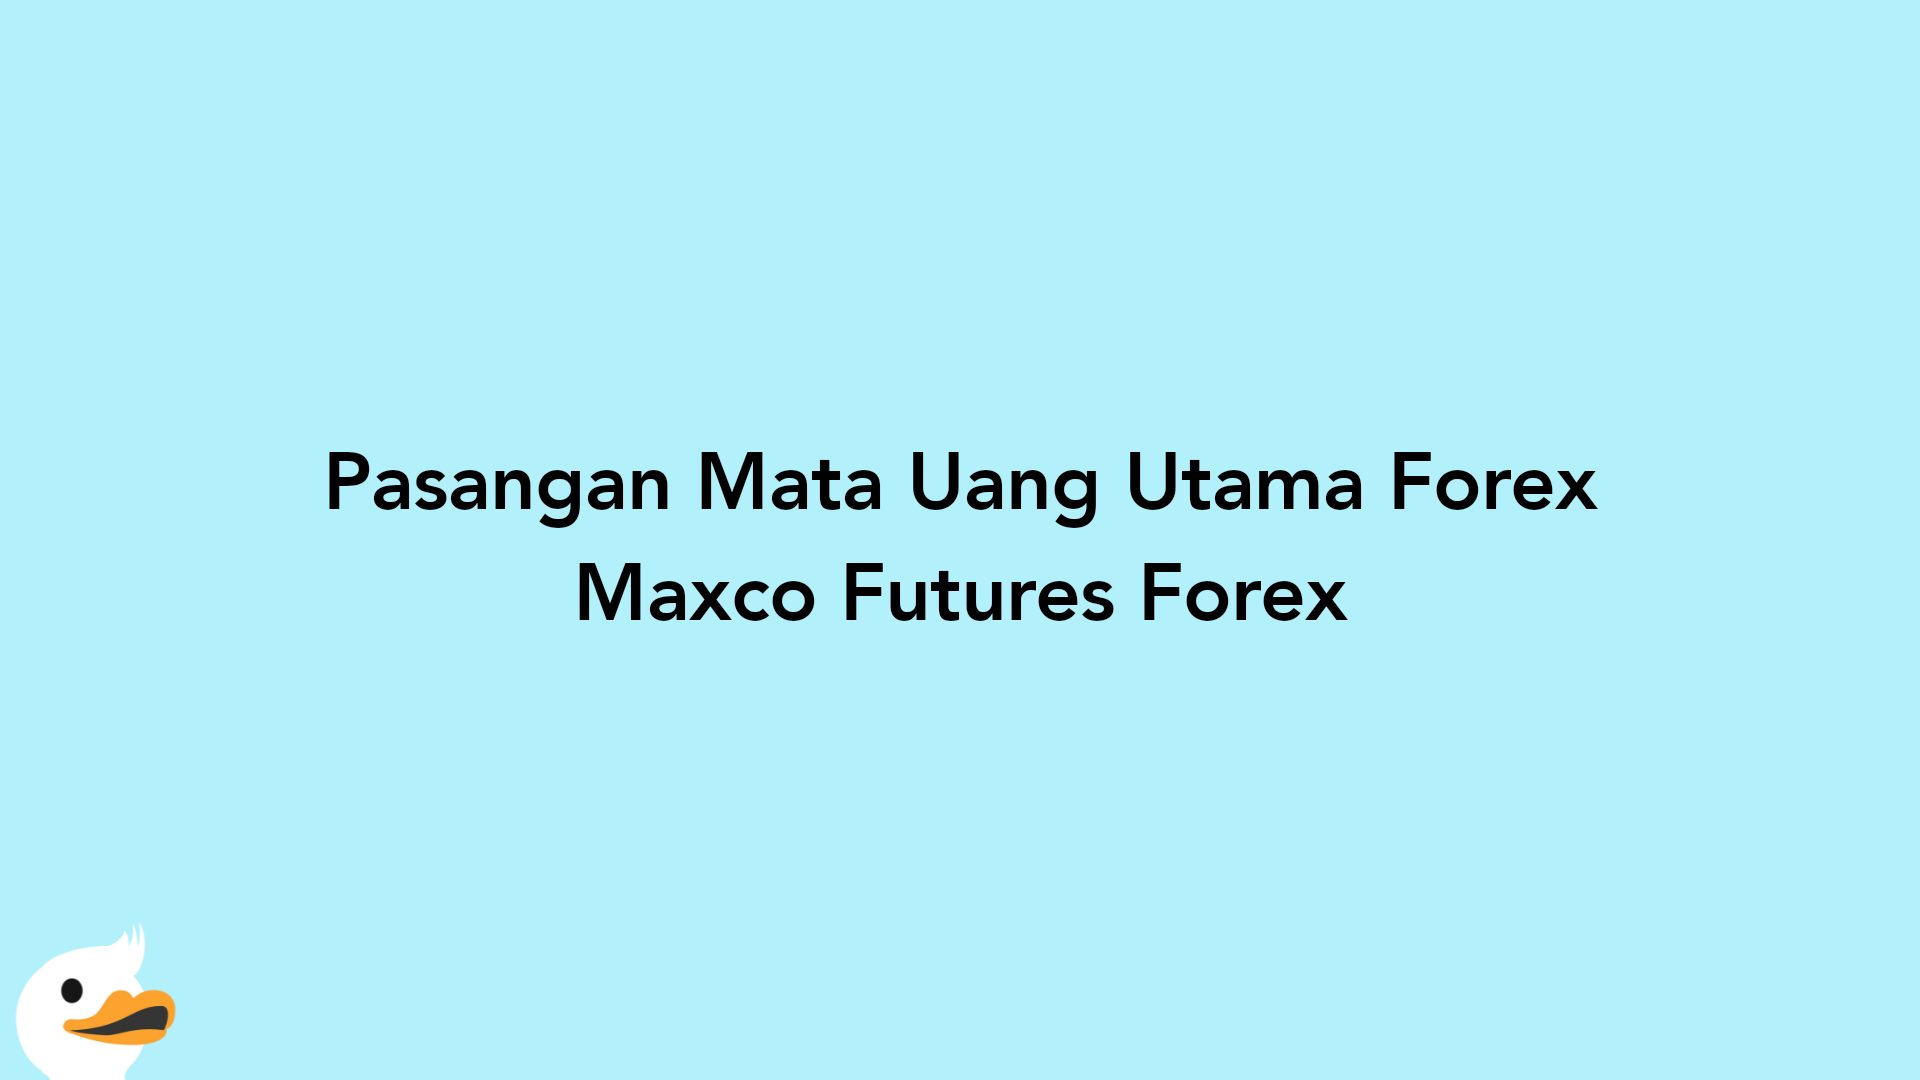 Pasangan Mata Uang Utama Forex Maxco Futures Forex